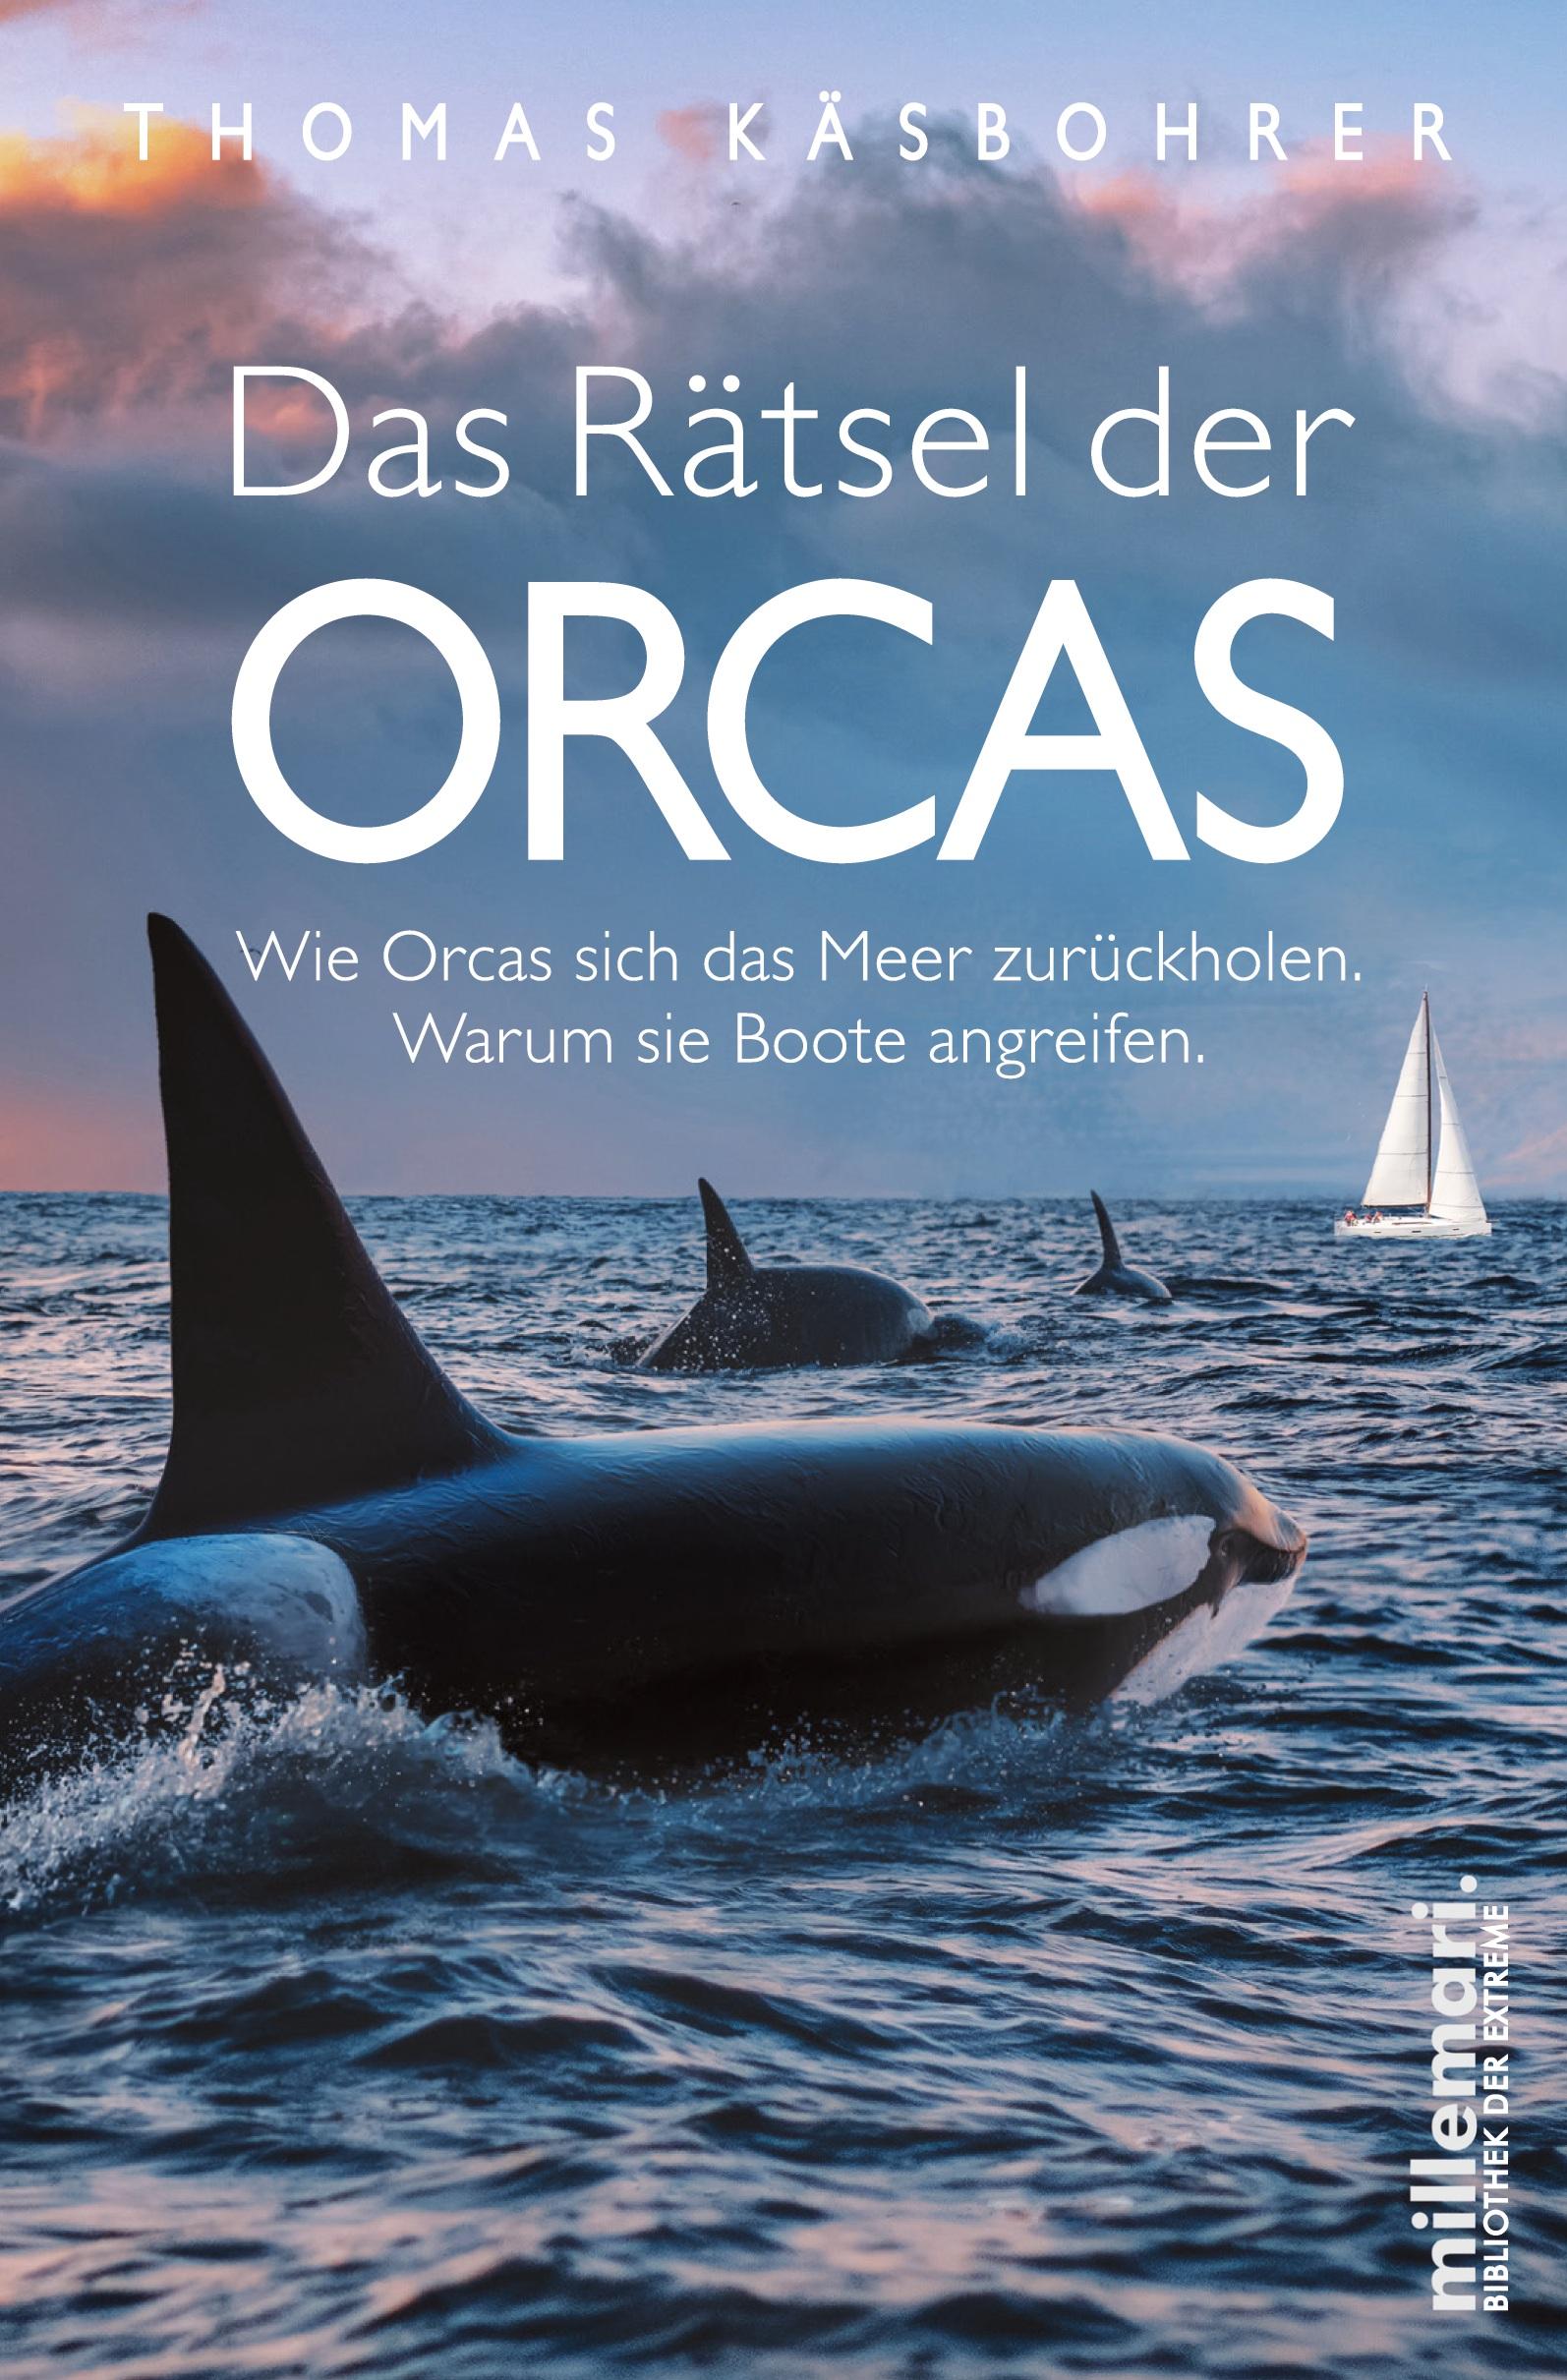 Das Rätsel der Orcas Wie Orcas sich das Meer zurückholen. Warum sie Boote angreifen.